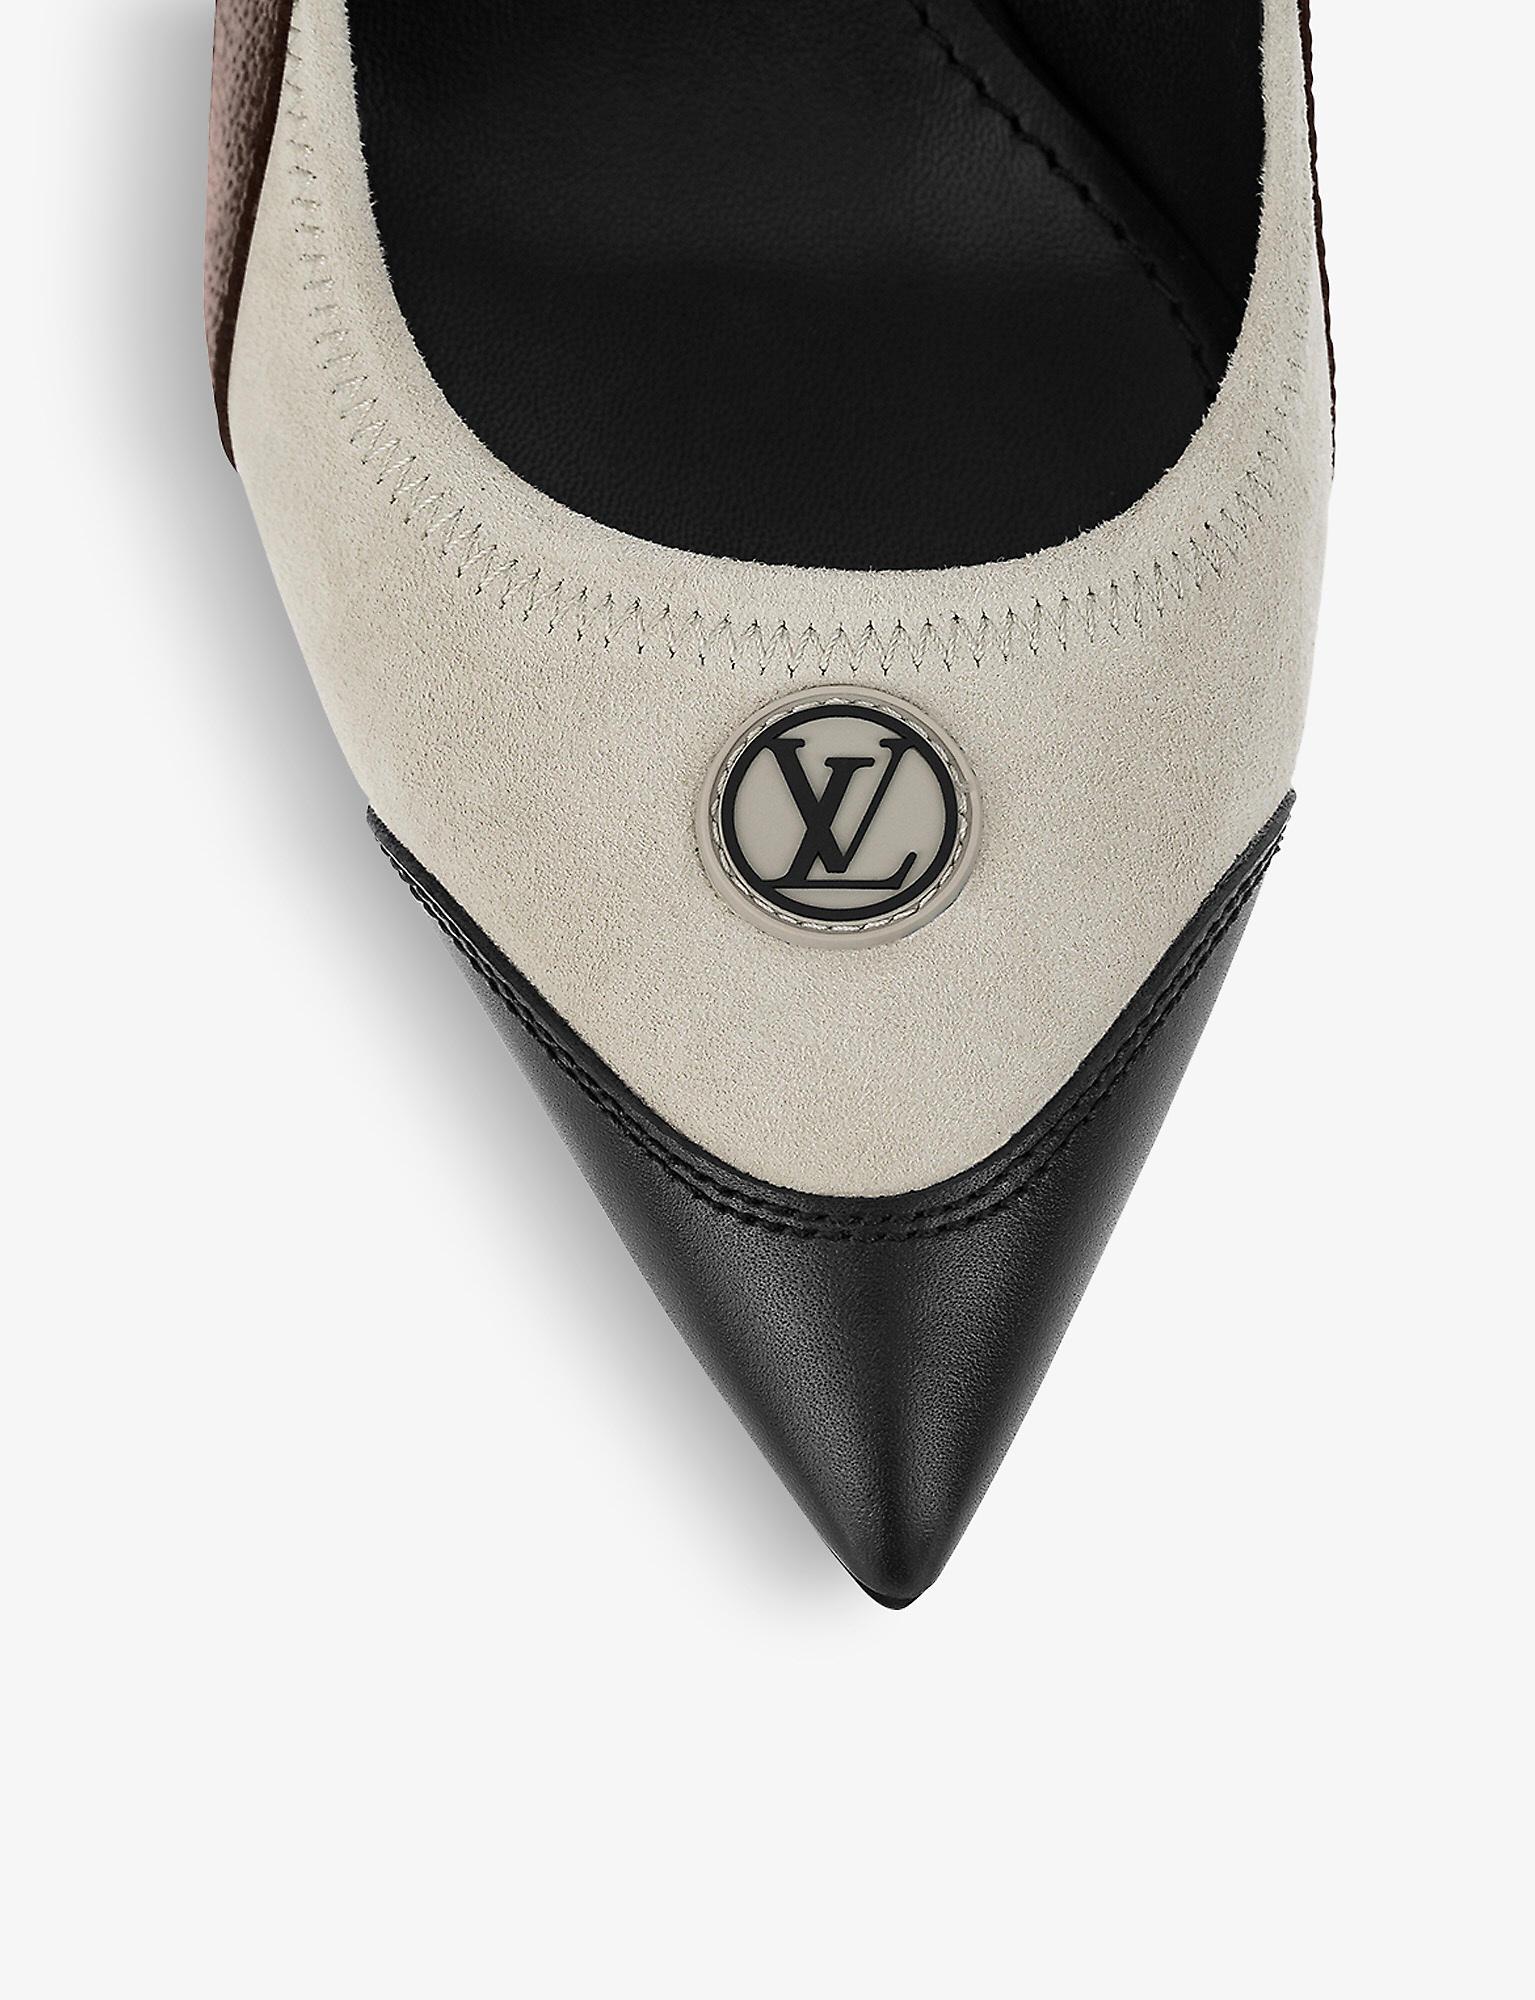 Louis Vuitton Archlight Slingback Pumps